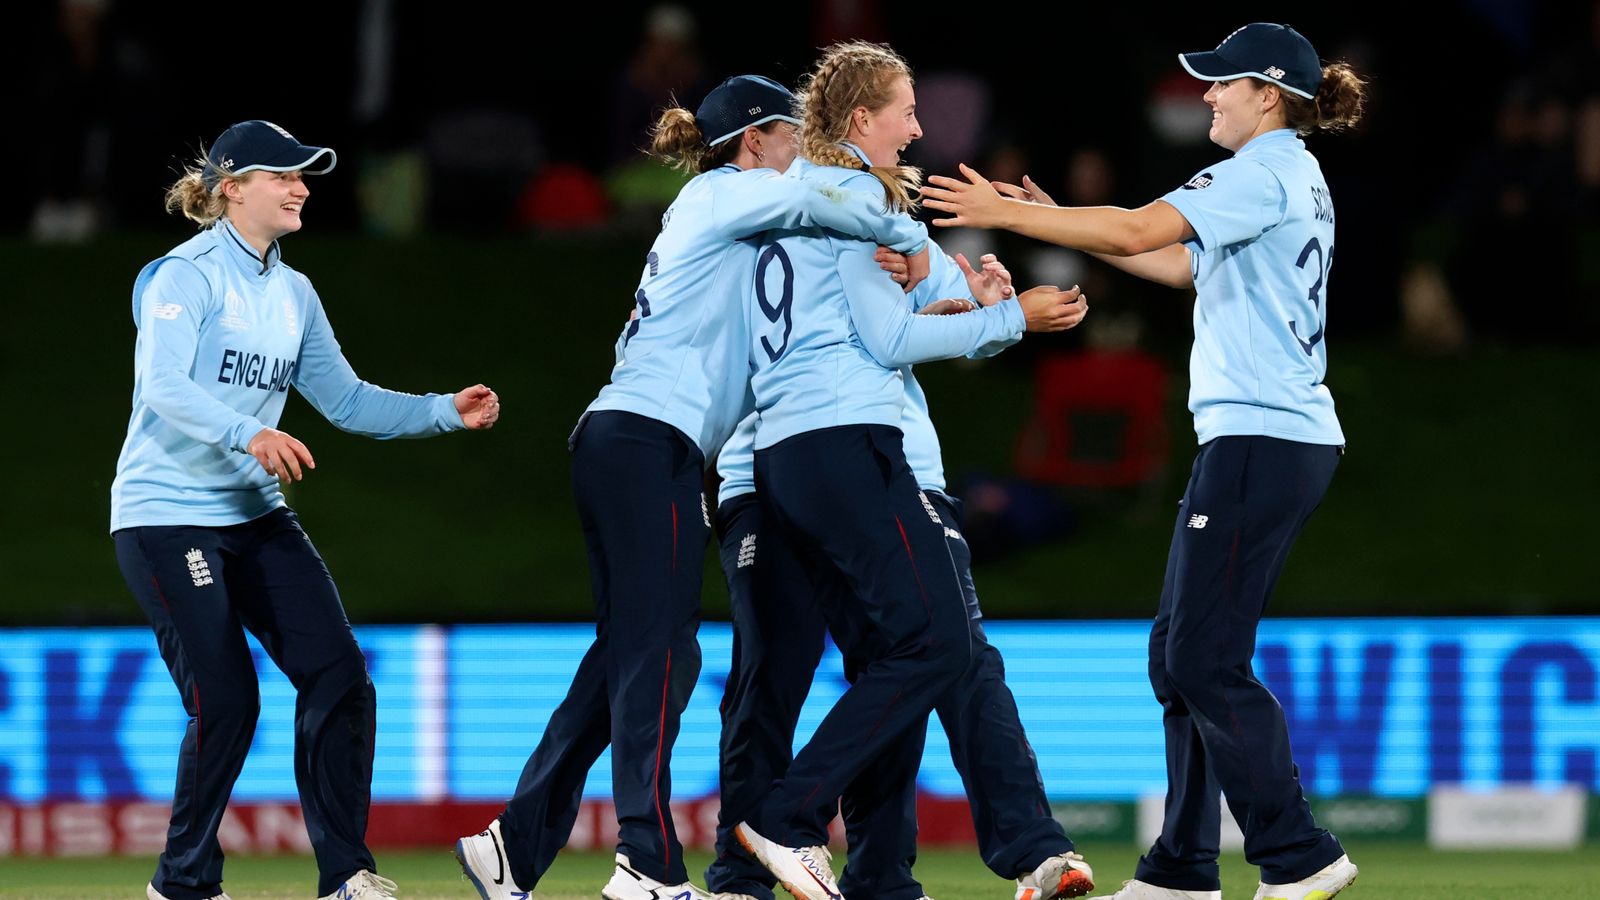 Finale de la Coupe du monde de cricket féminin : l’Angleterre affrontera l’Australie |  Nouvelles du monde